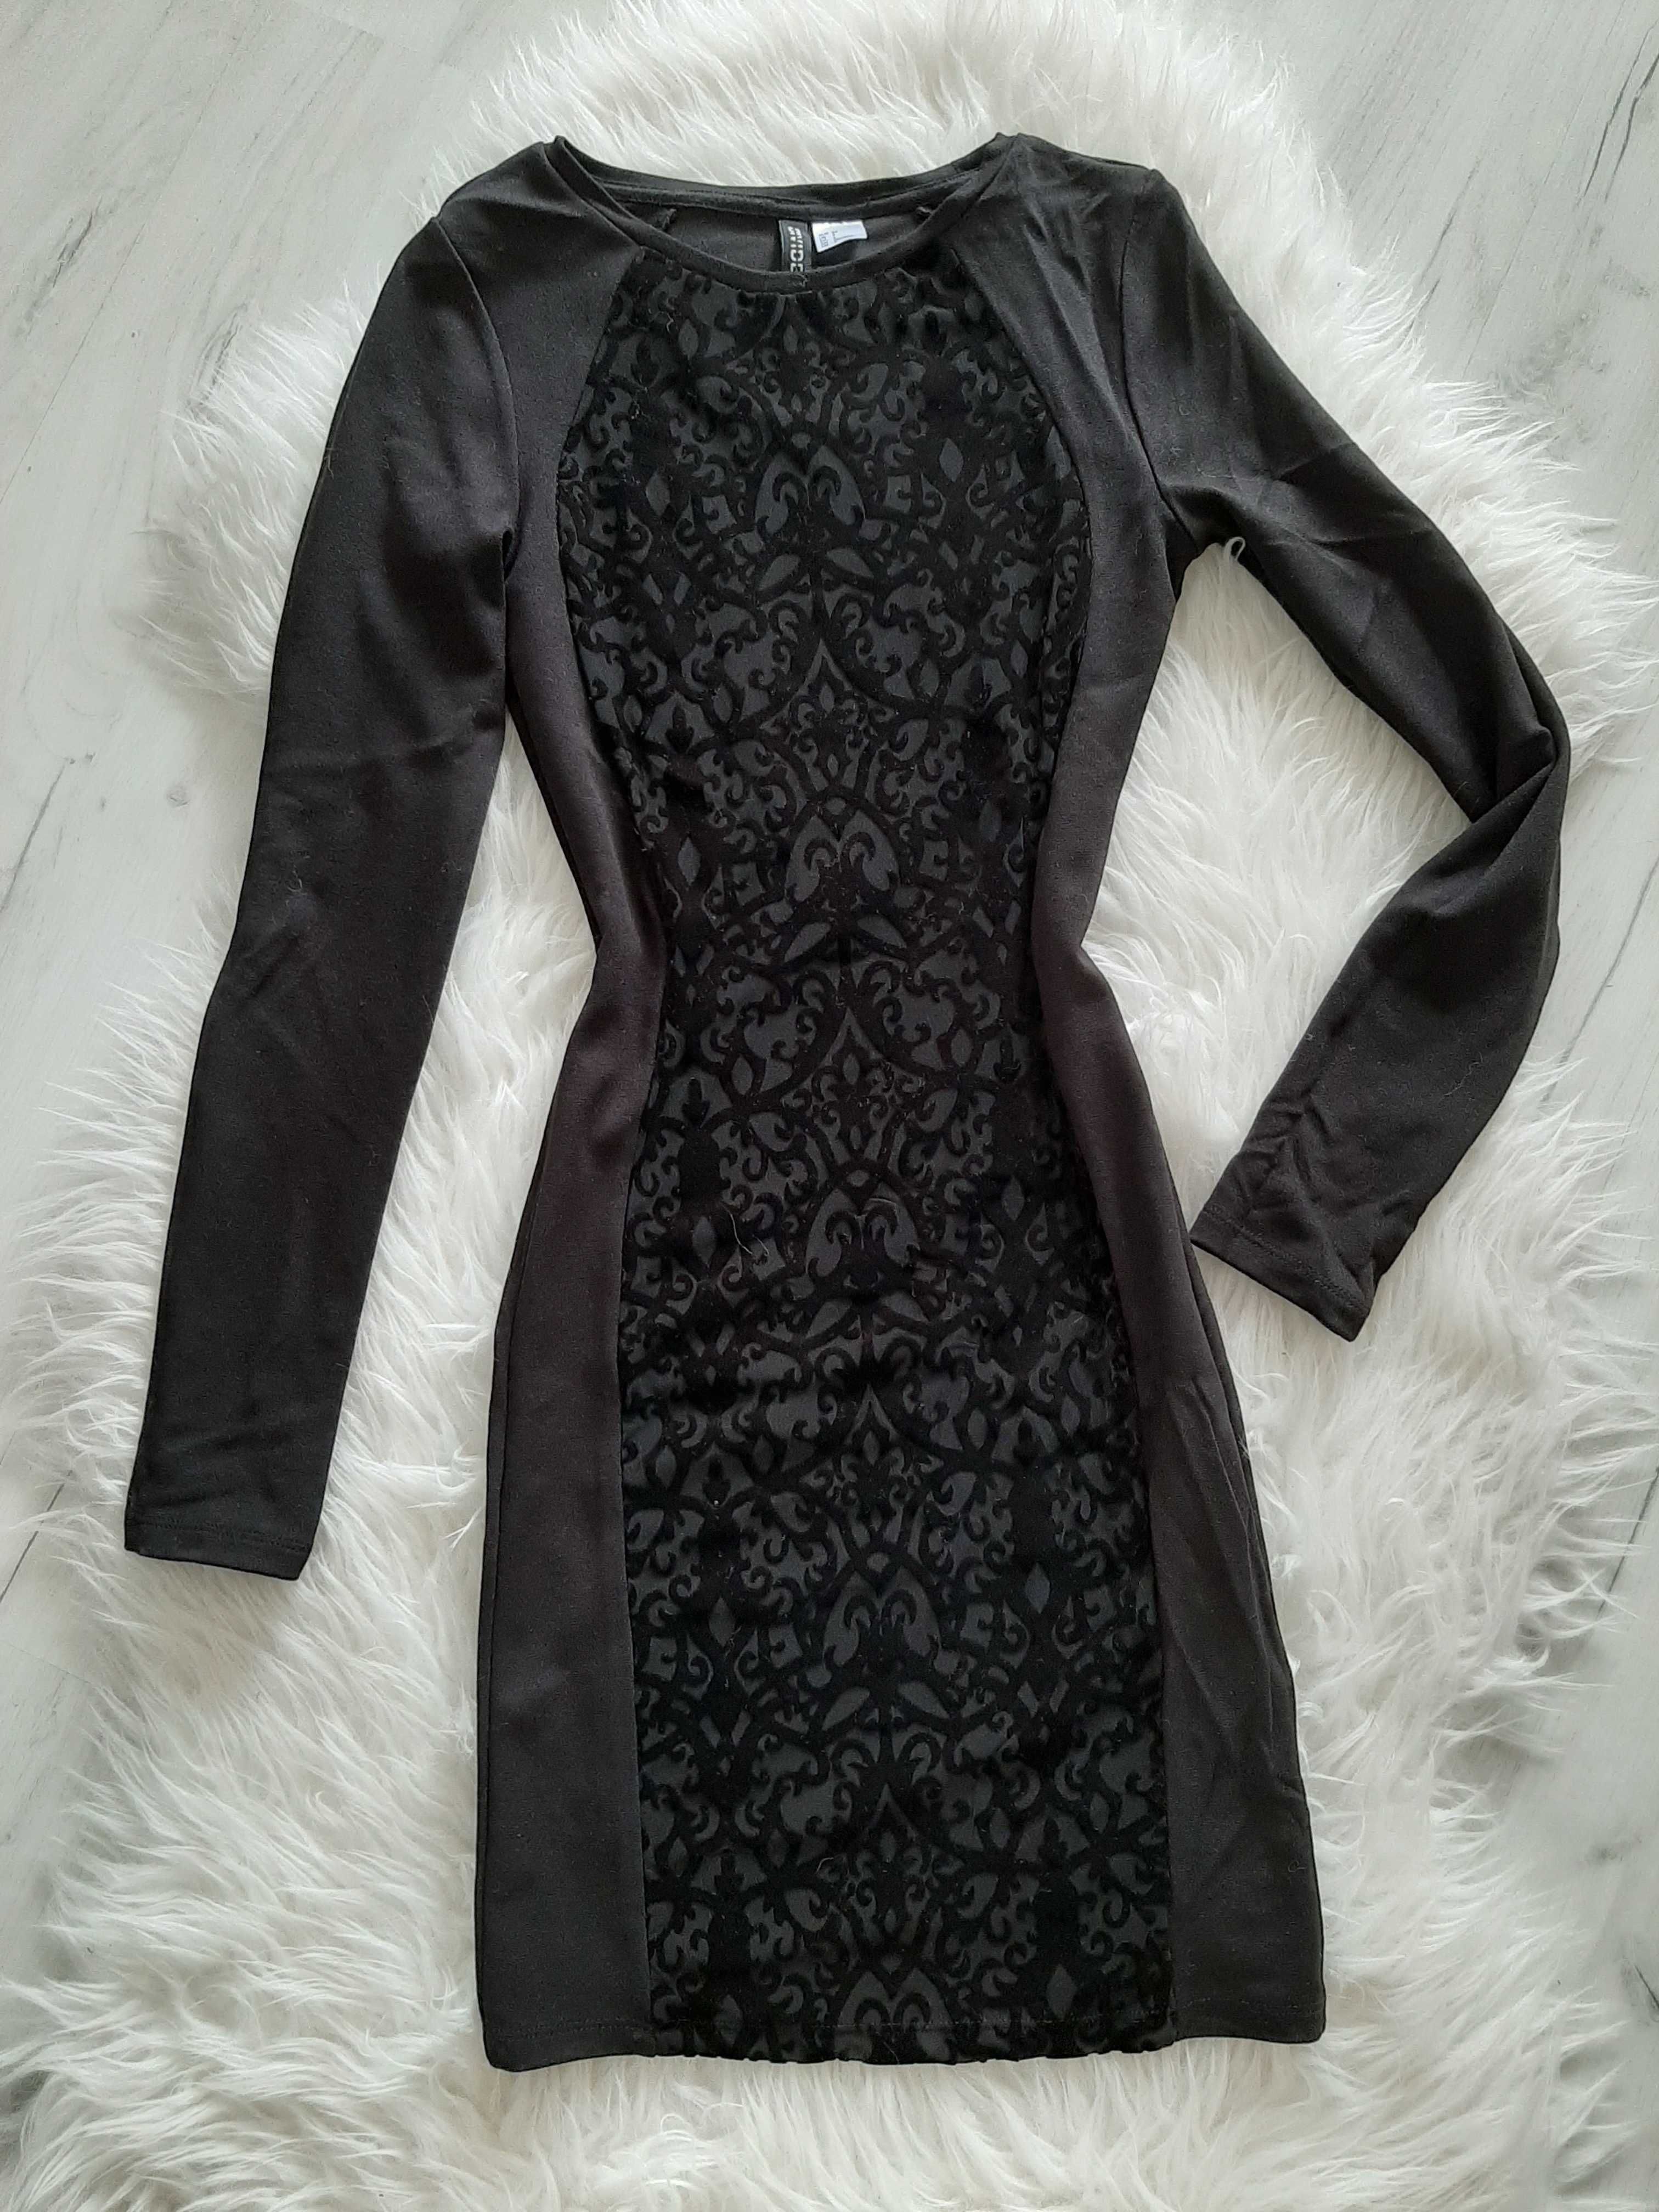 H&M Piękna czarna sukienka z koronkowym wzorem